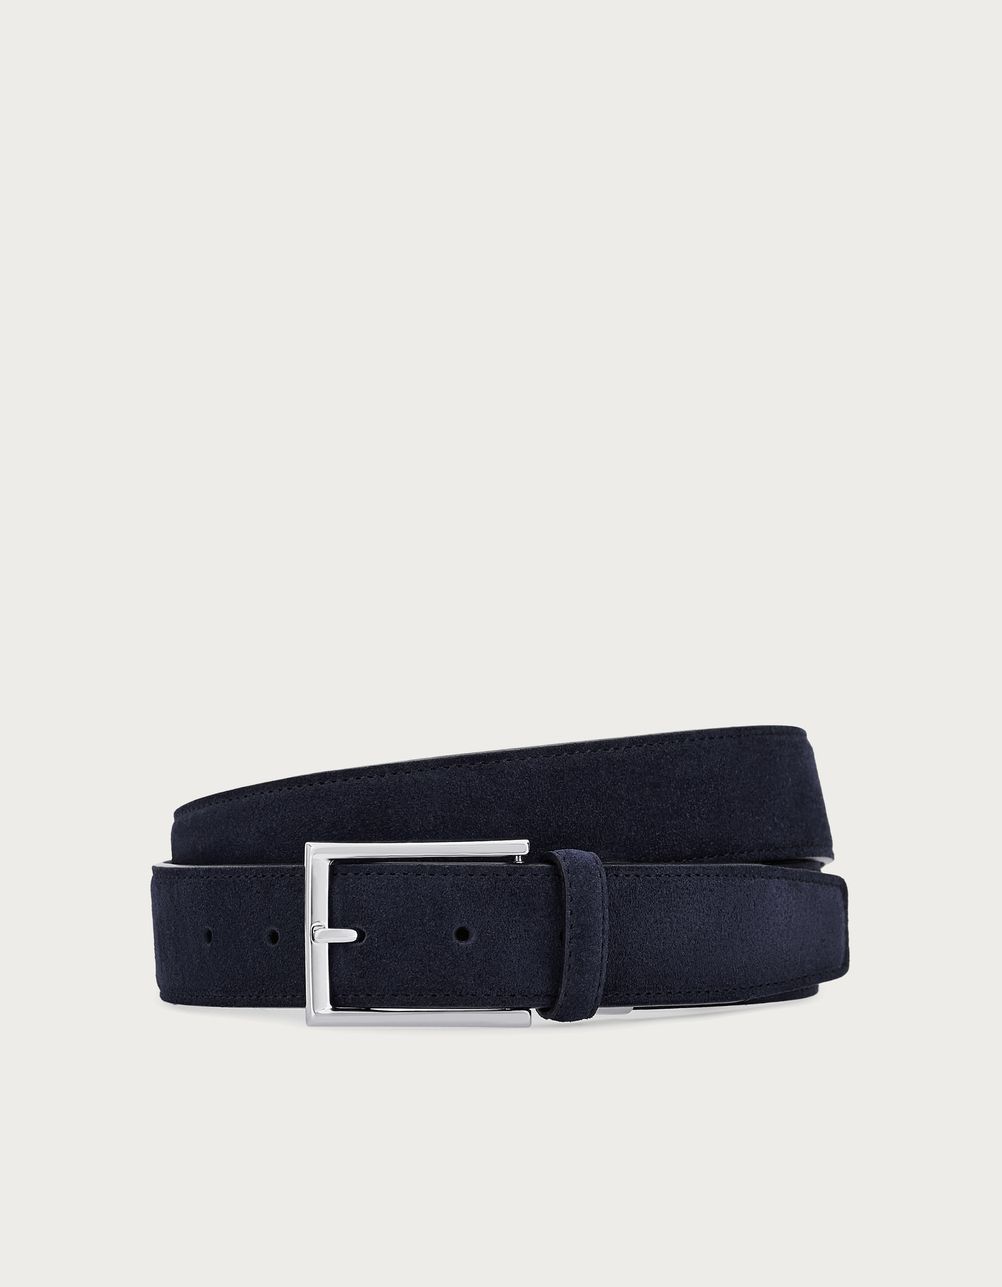 Blue suede calfskin belt